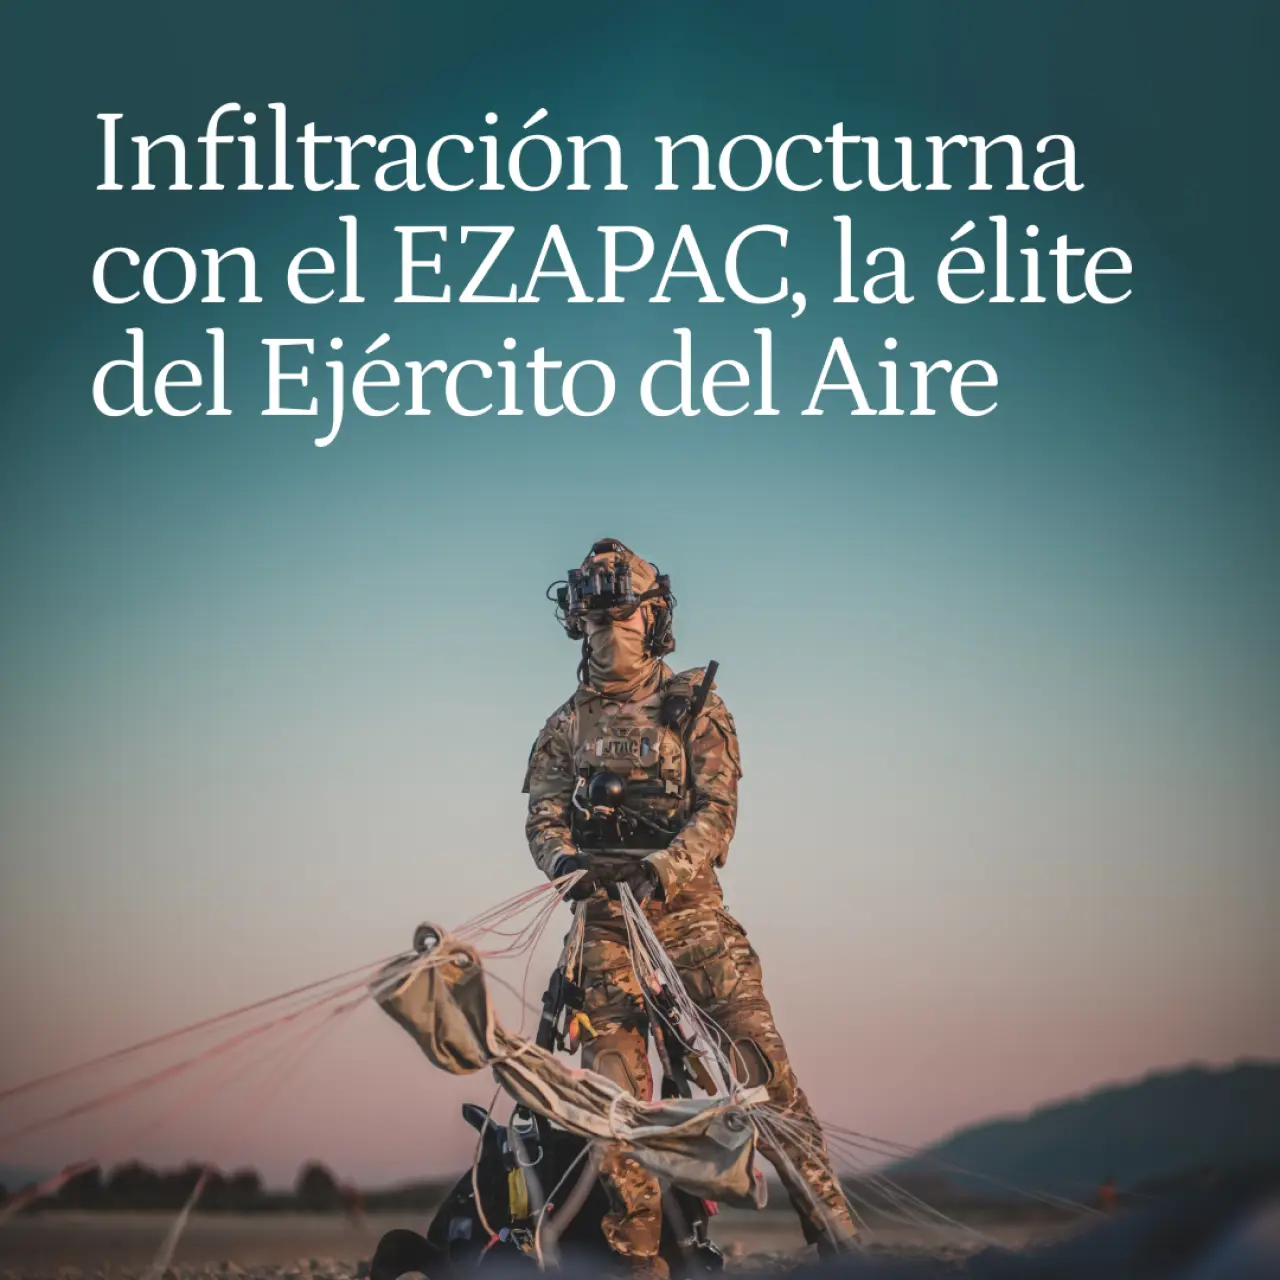 Infiltrados con el EZAPAC, la fuerza de élite del Ejército del Aire: "Sólo merece vivir quien por un noble ideal esté dispuesto a morir"